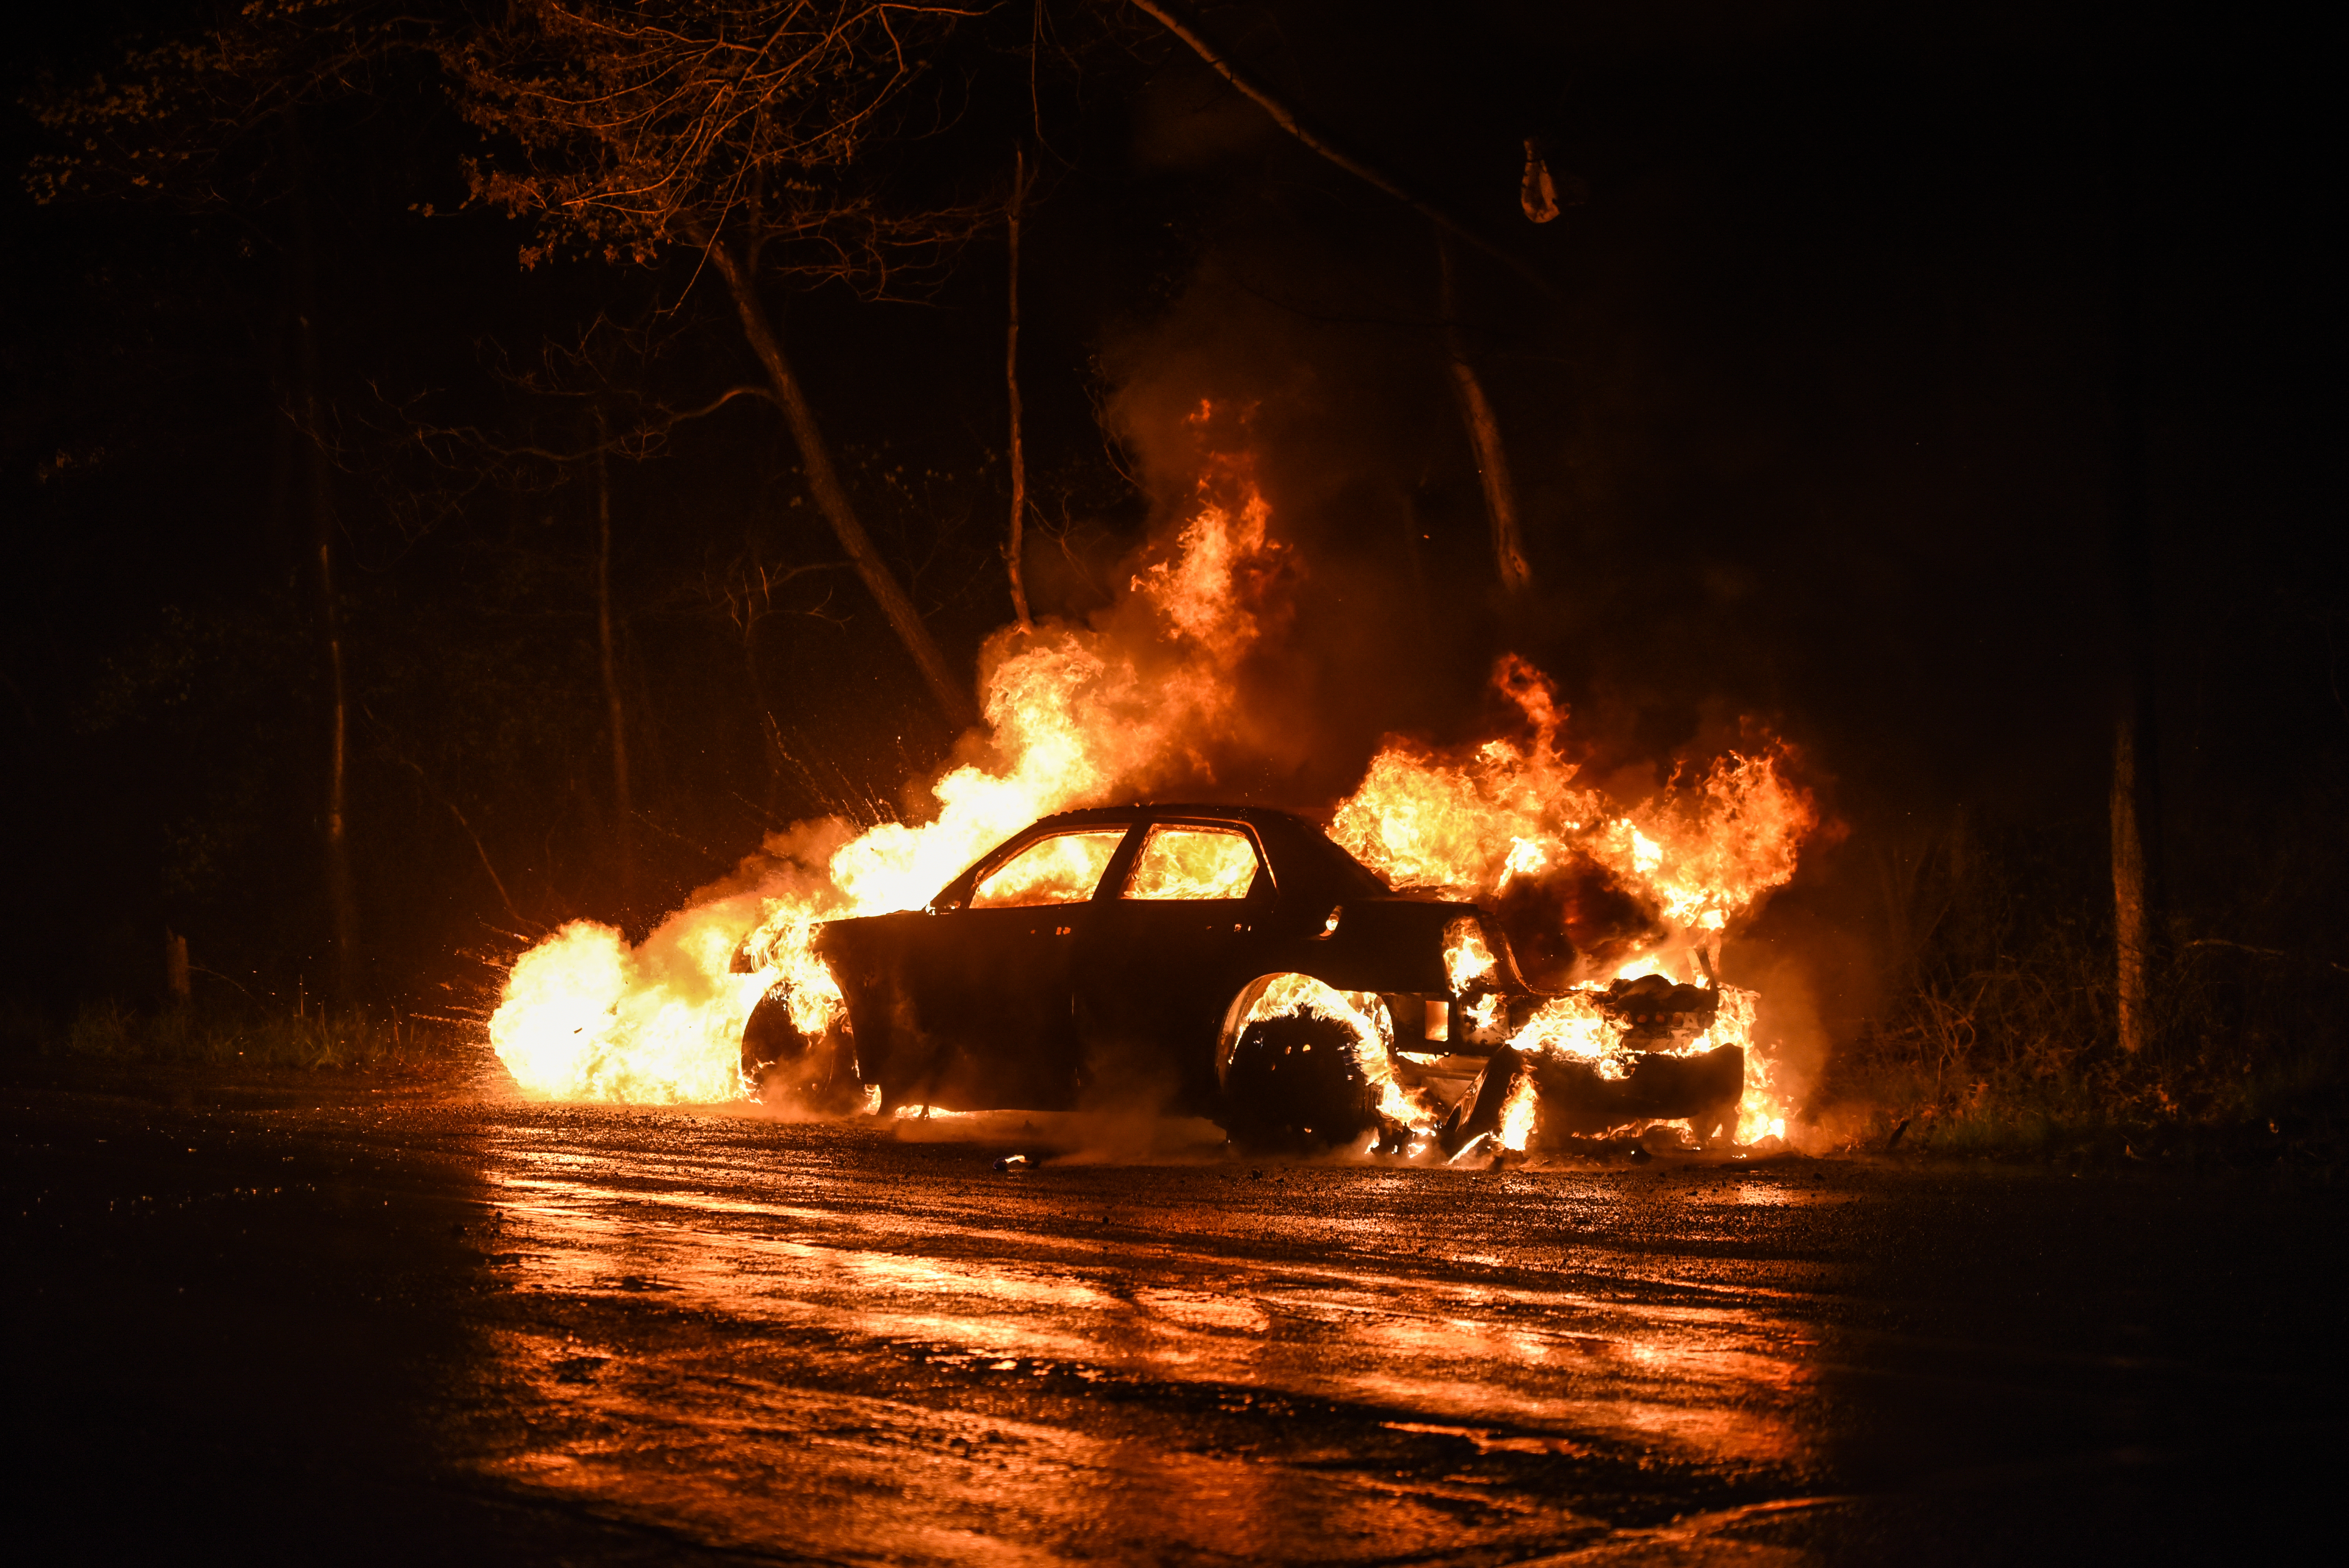 Automóvil en llamas | Fuente: Shutterstock